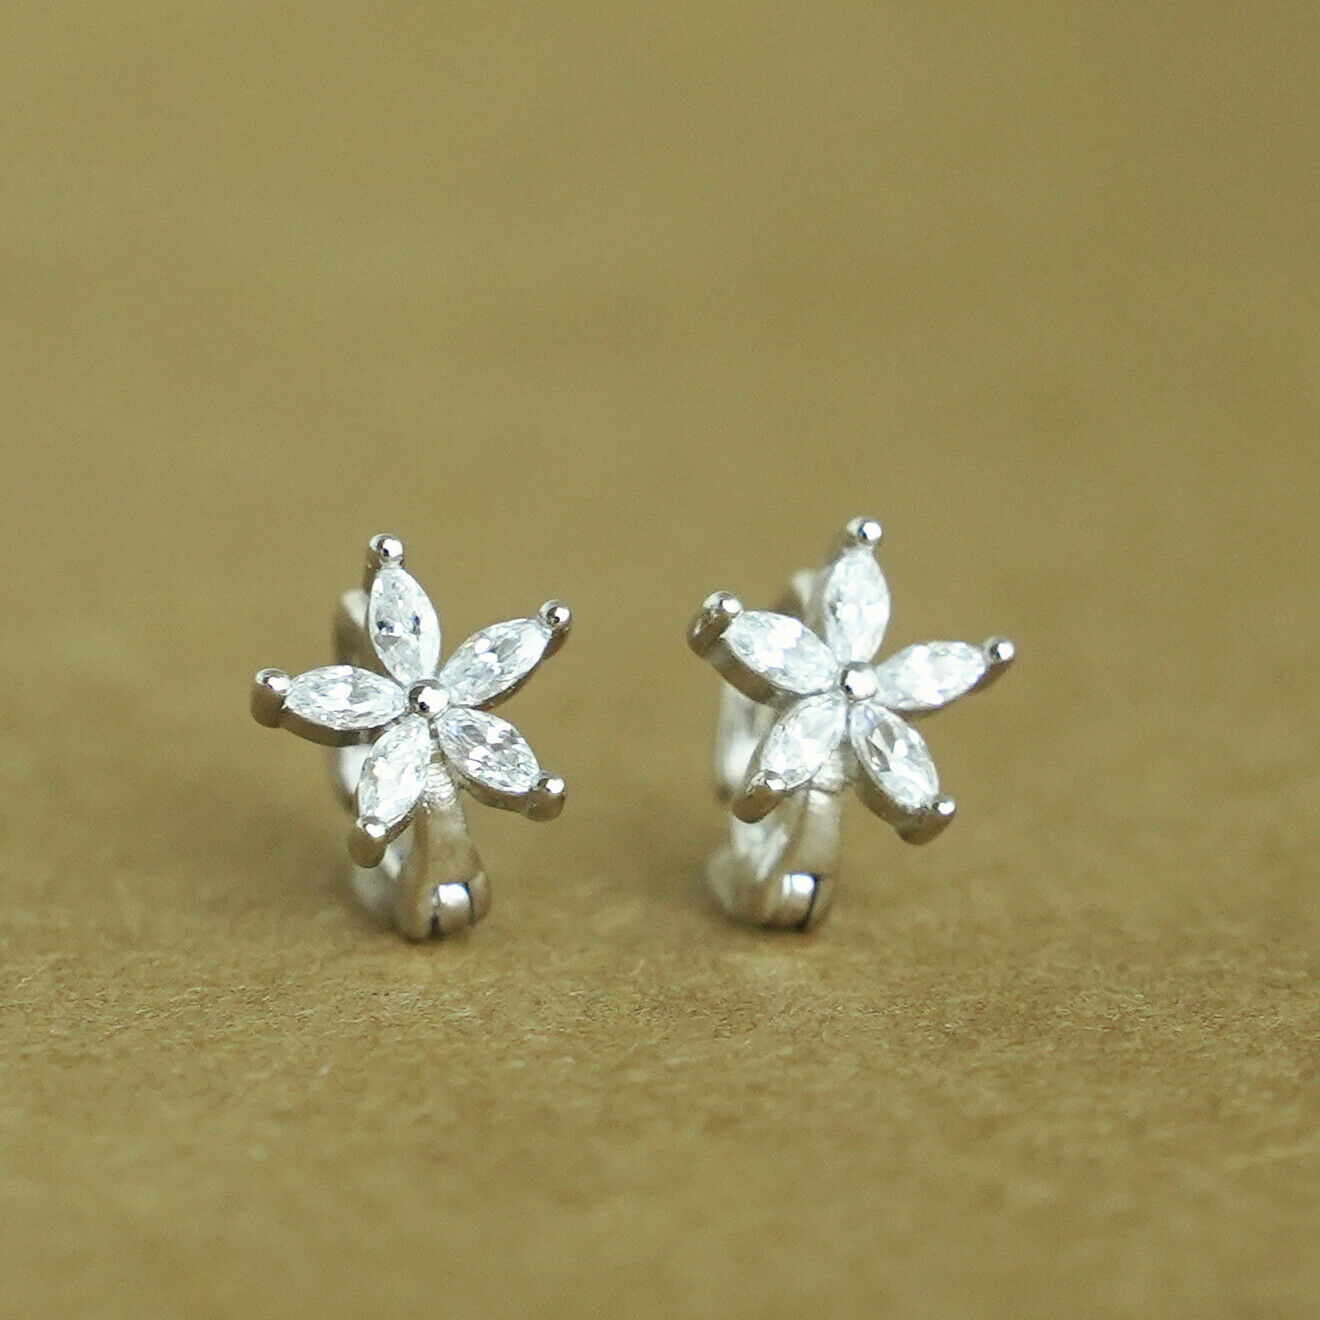 Sterling Silver White CZ Flower Huggie Hoop Earrings Jewellery 6mm - sugarkittenlondon